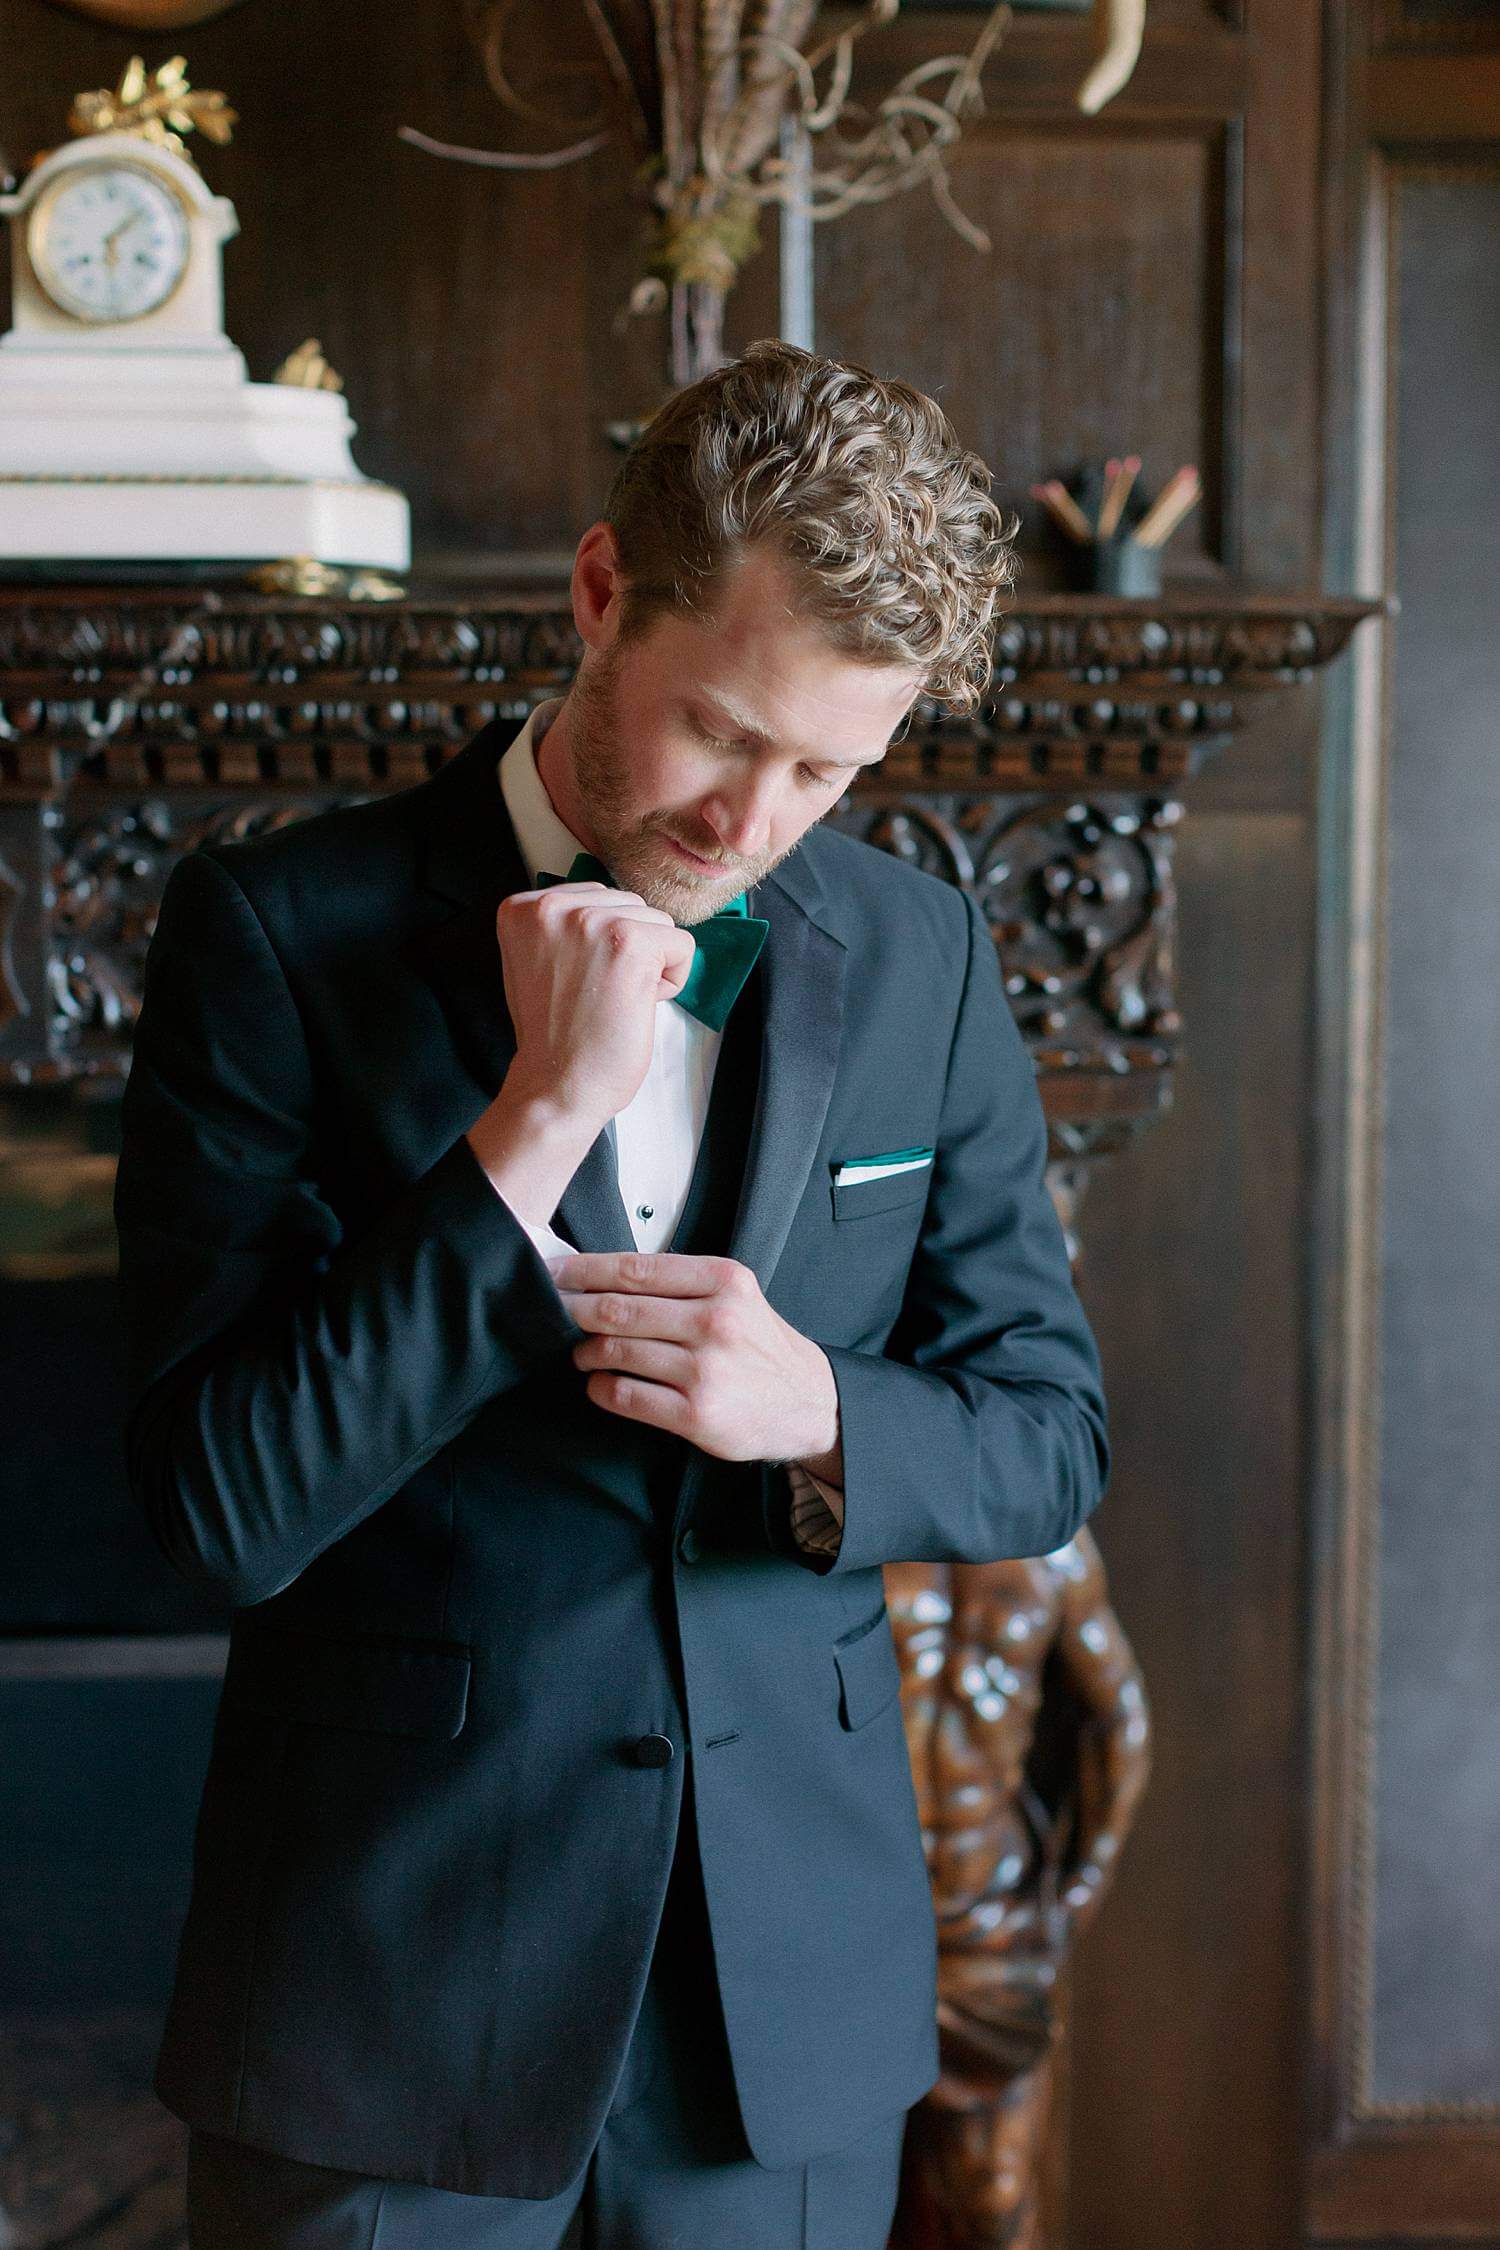 Groom adjusting his cufflinks before his wedding.